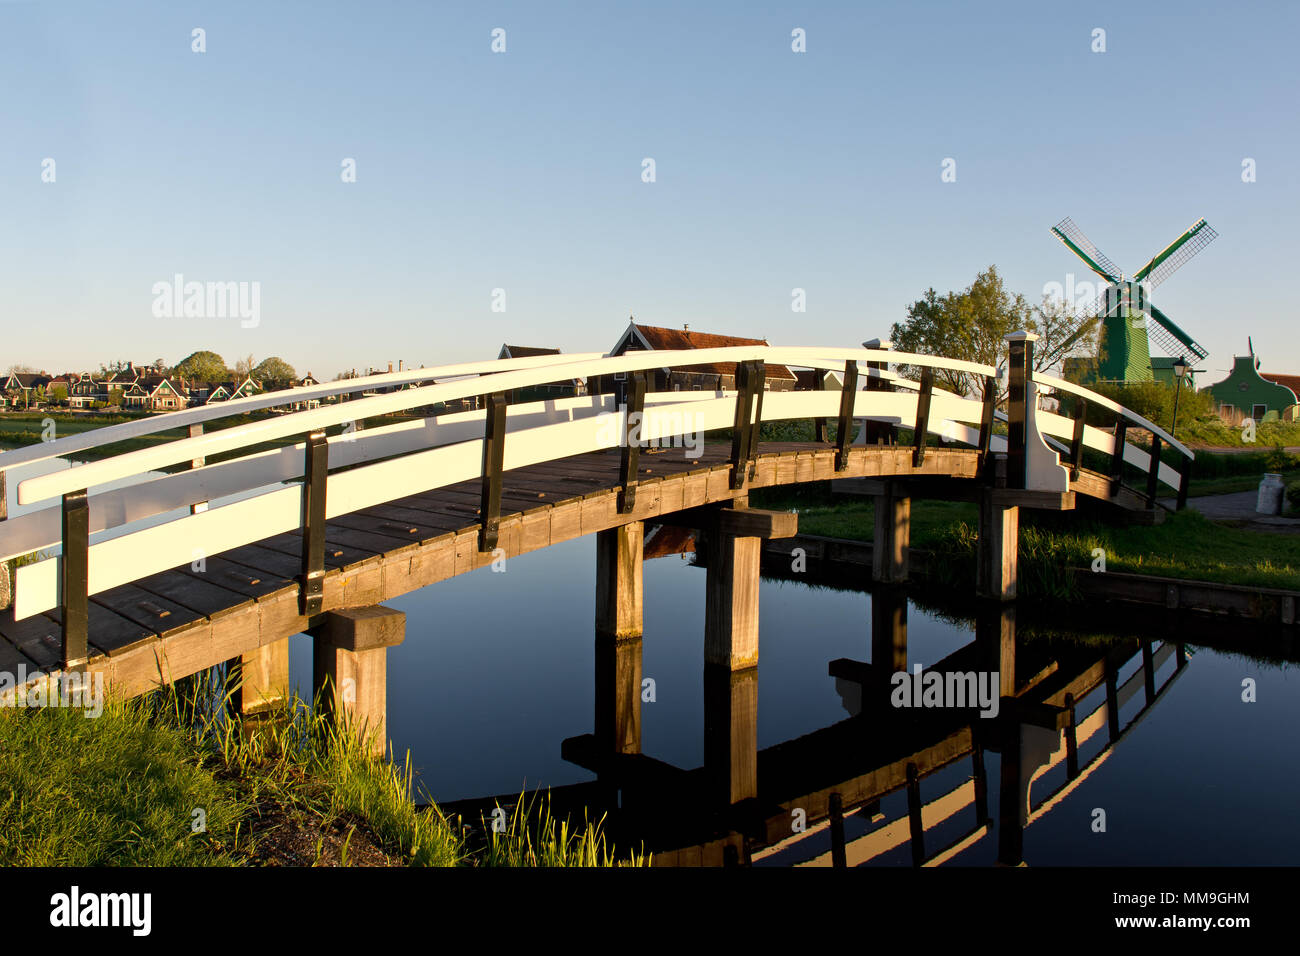 Arch bridge in Zaanse Schans, The Netherlands Stock Photo